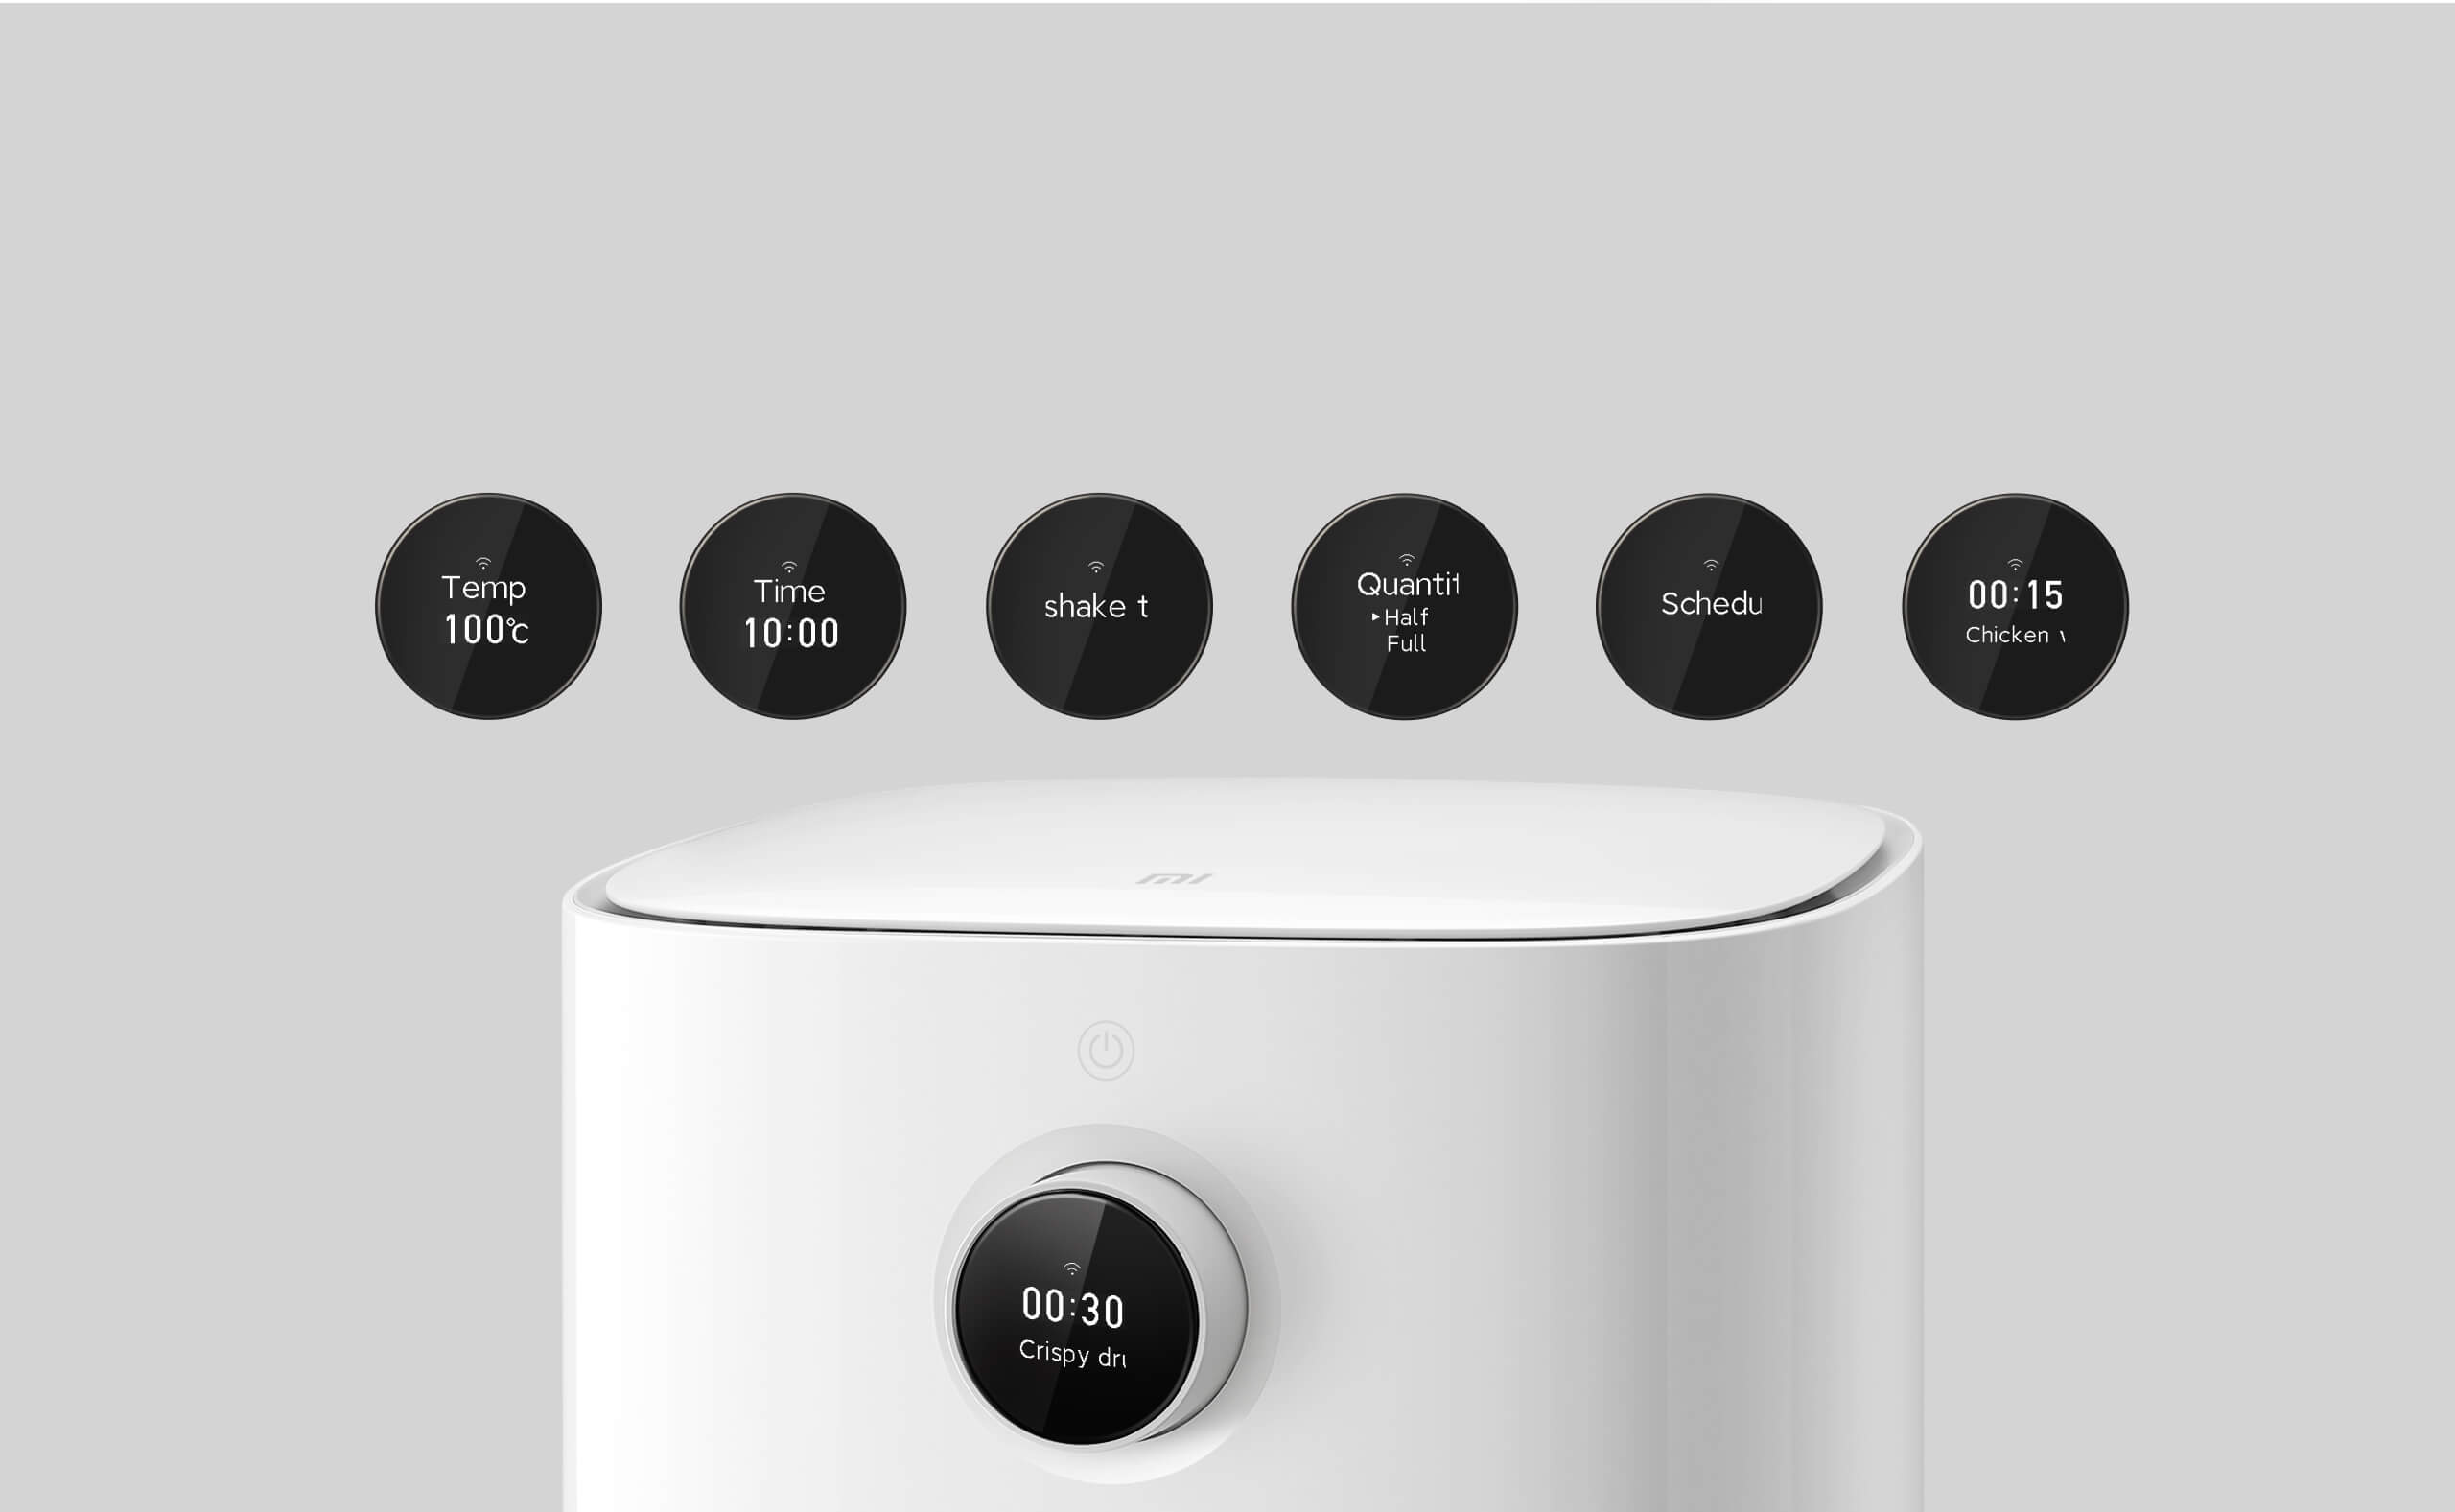 Xiaomi Mi Smart Air Fryer 3,5L: The brand's first hot air fryer